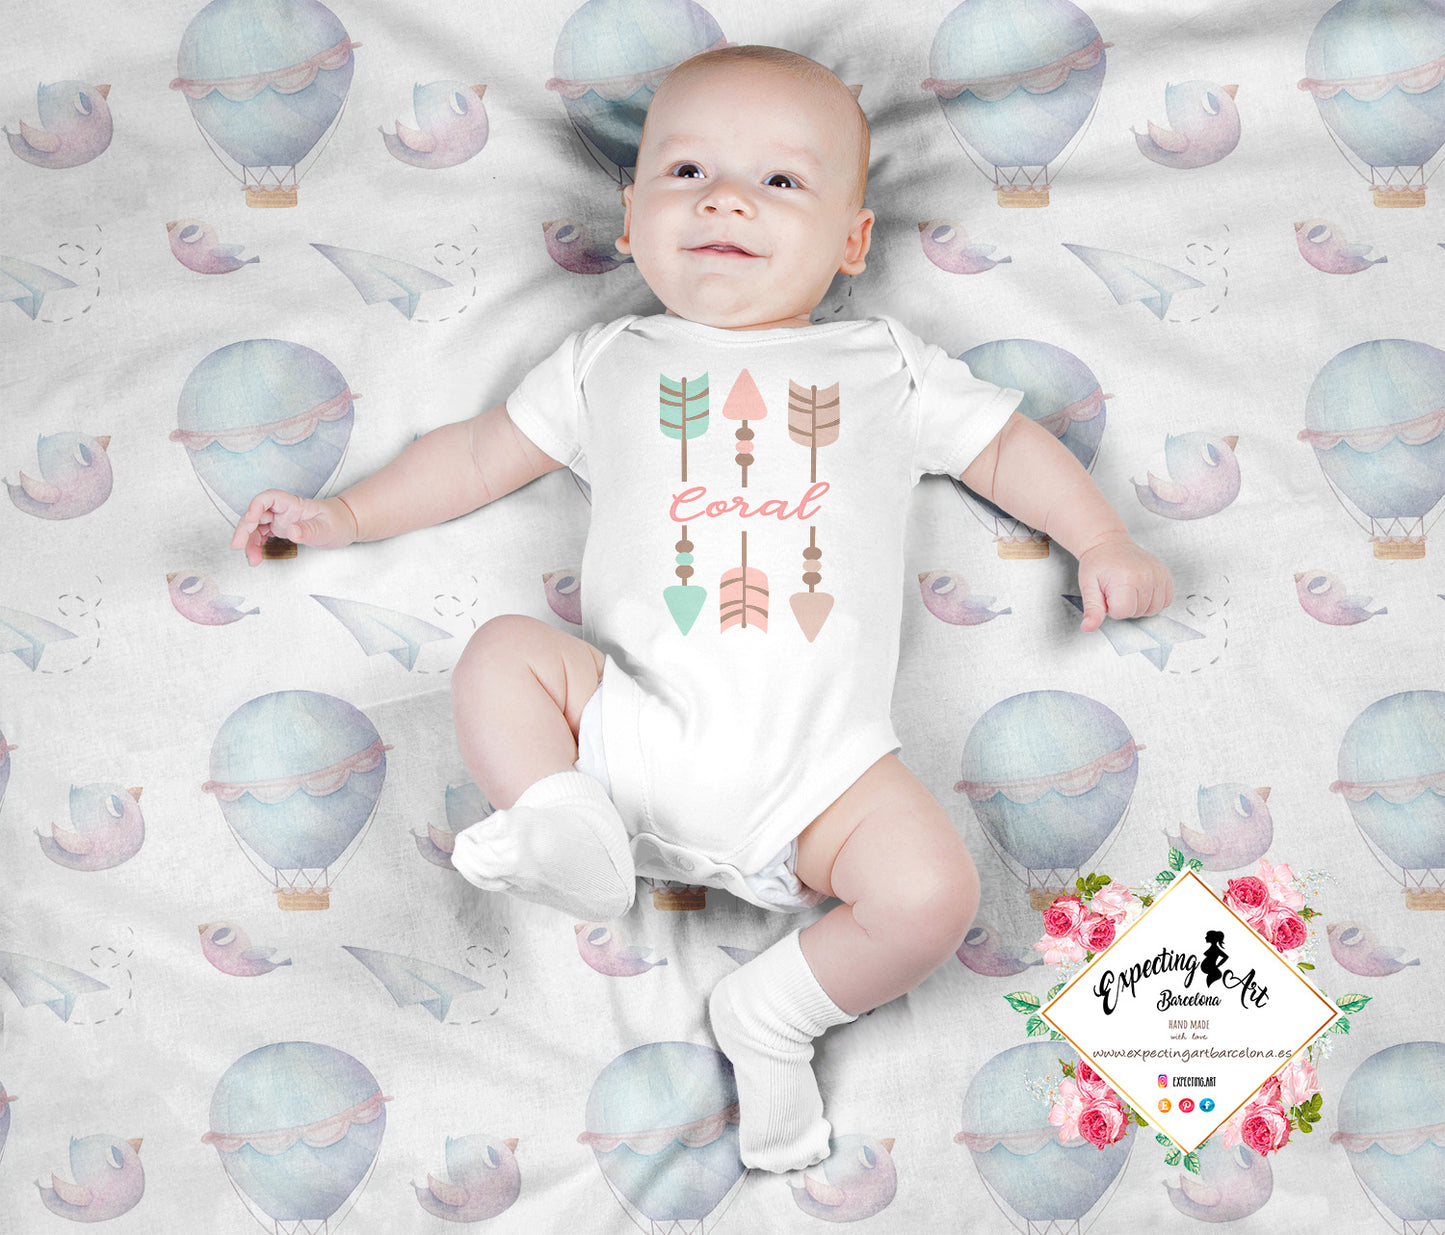 Body Blanco Personalizado para Bebés con Nombre - Modelo Coral Flechitas Boho